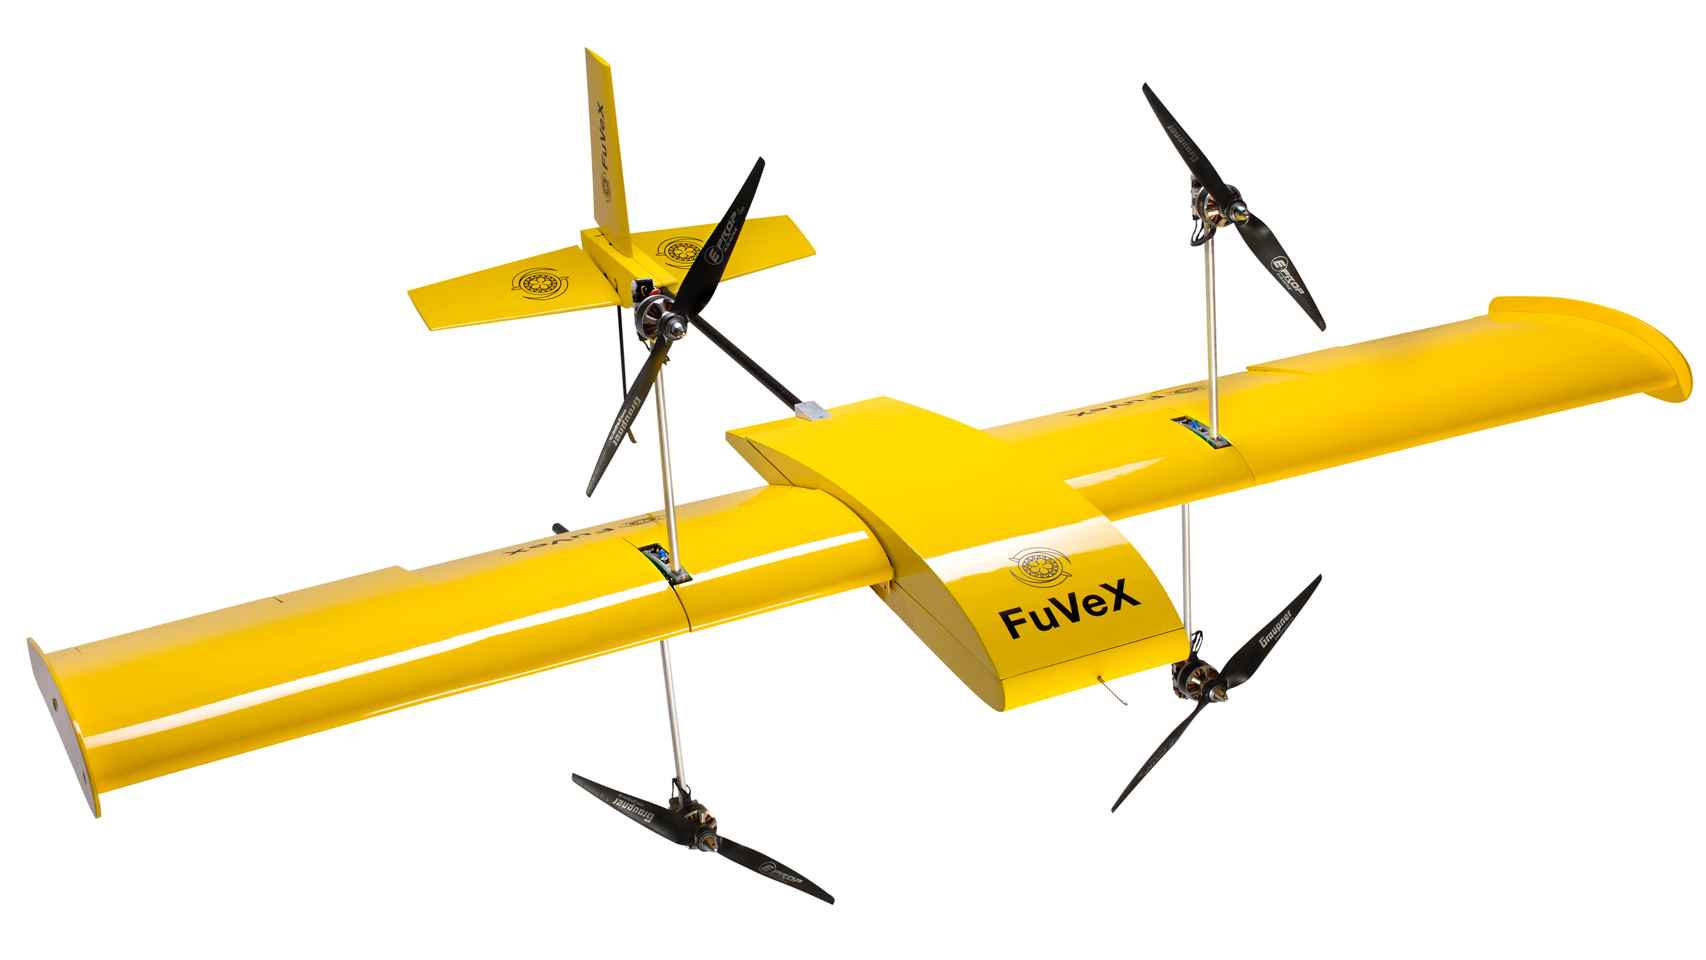 Prototipo del dron desarrollado por Fuvex para la inspección de líneas eléctricas.